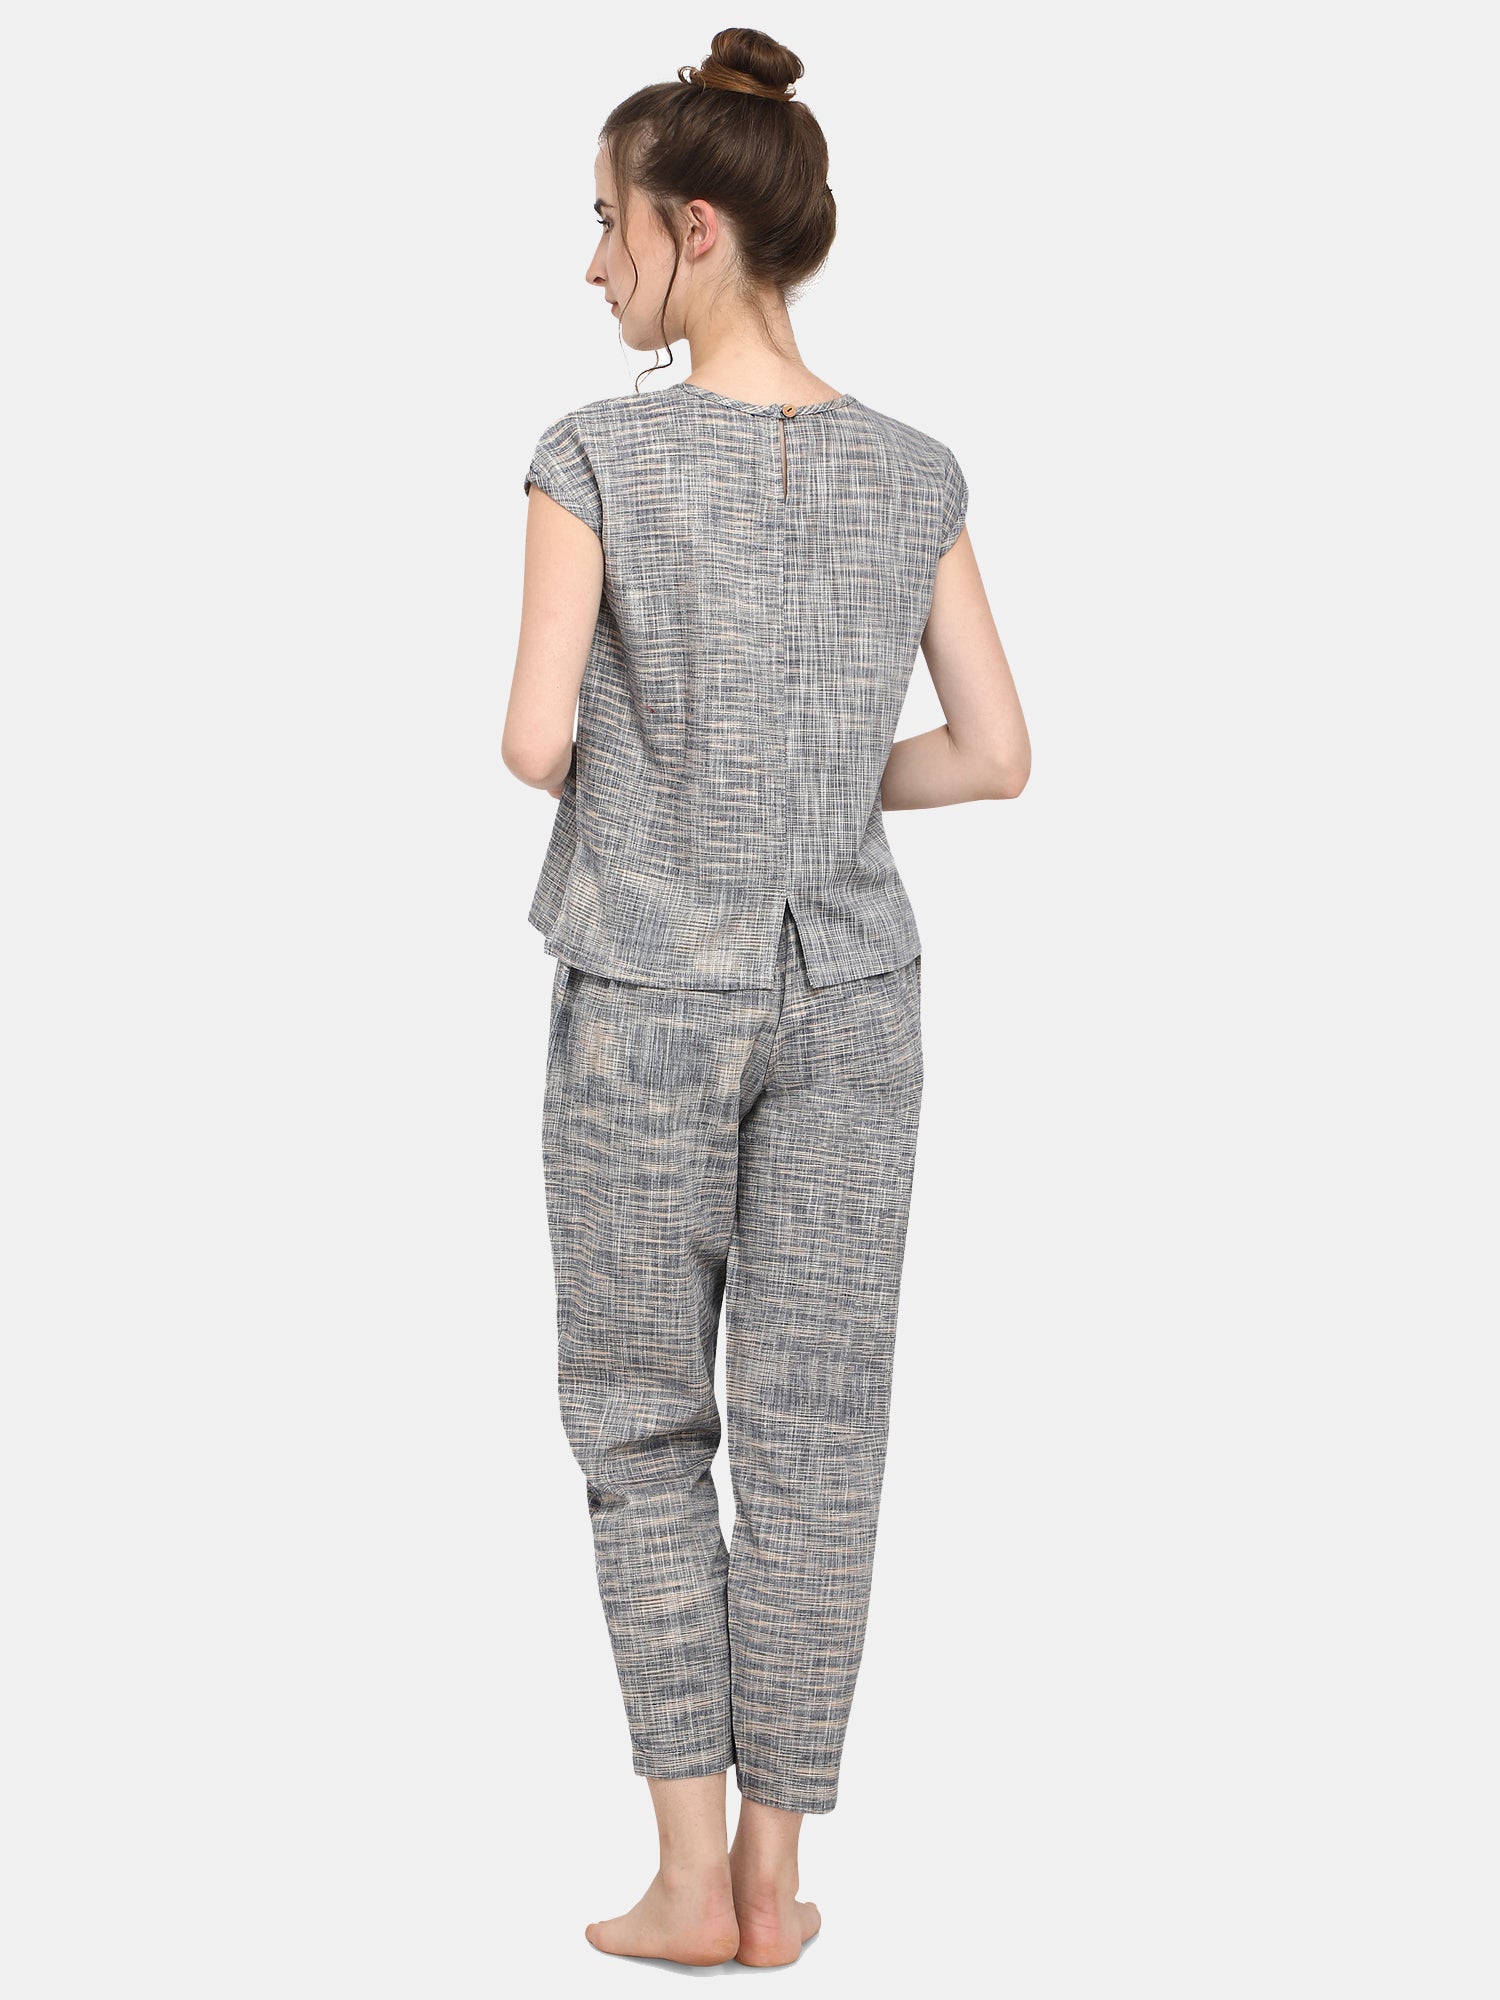 Women's Grey Slub cotton short night suit set  - MESMORA FASHIONS